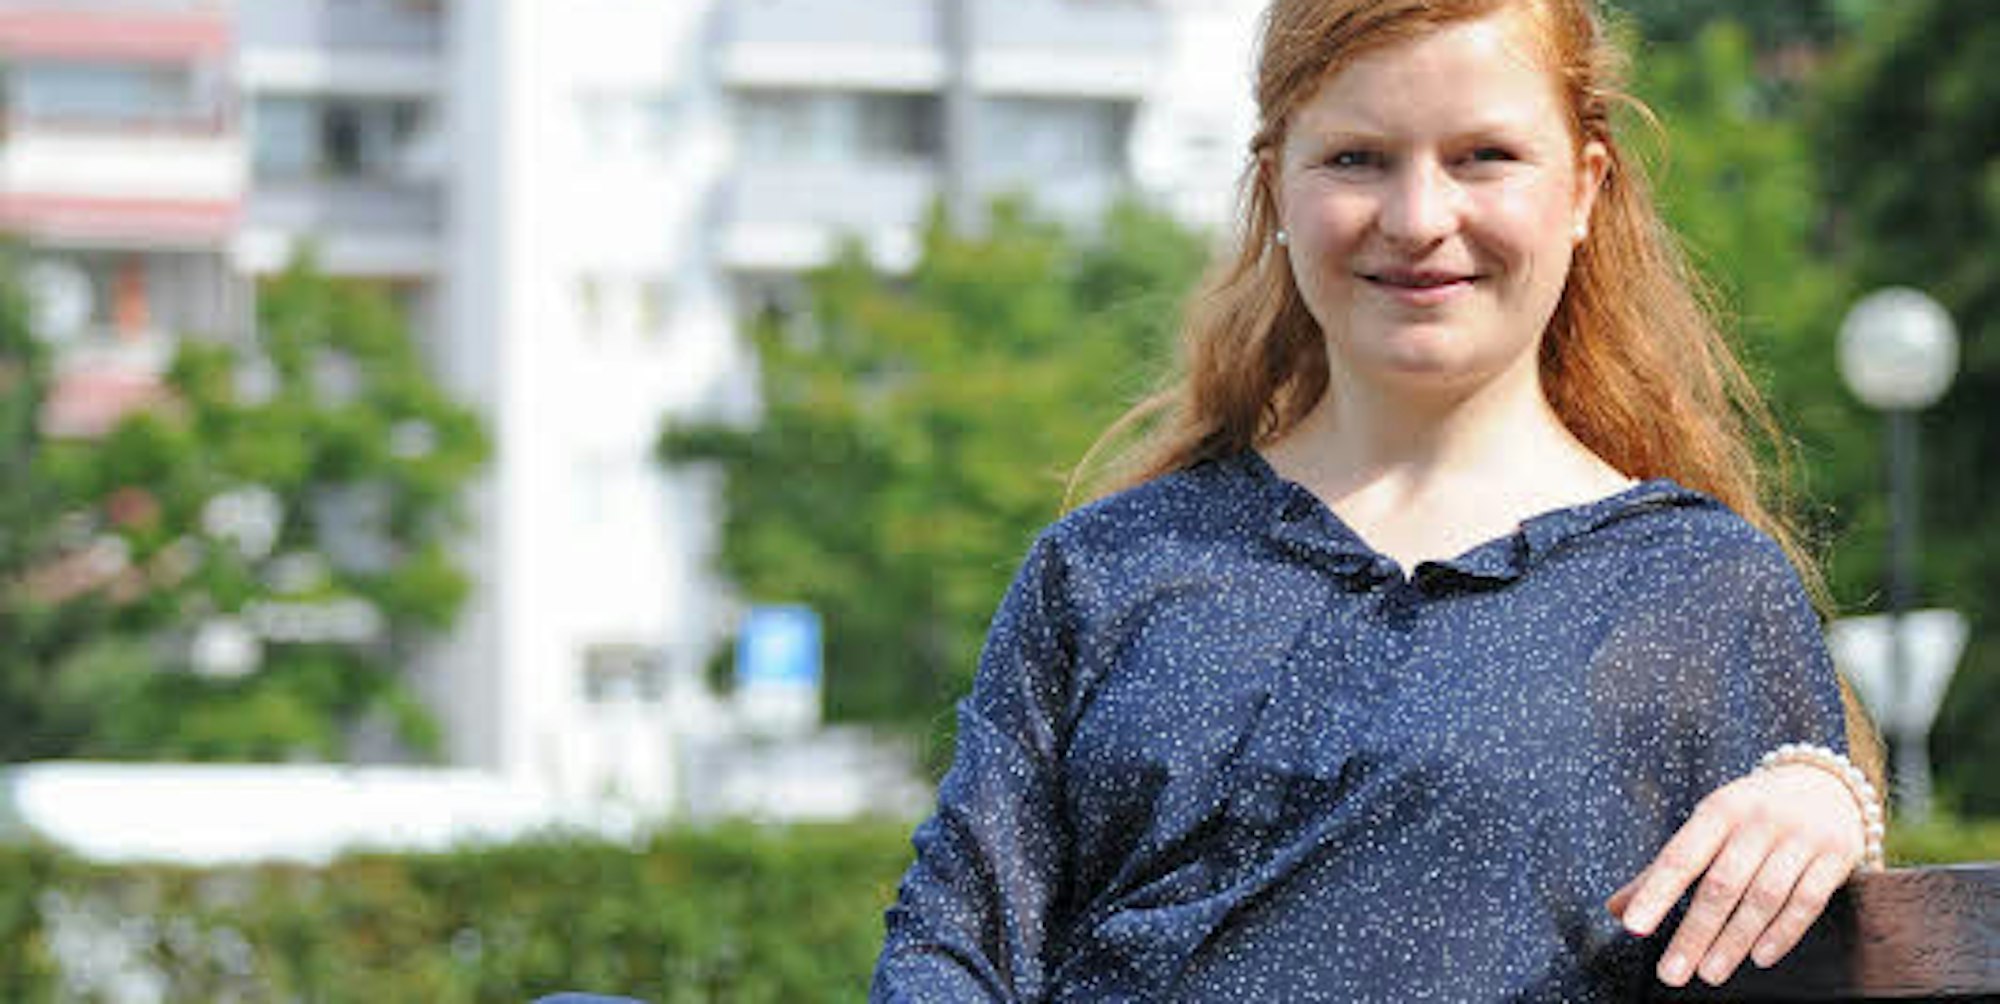 Tanja Deiters ist Manforts neue Quartiersmanagerin. Die studierte Ethnologin hat schon in Rheindorf gearbeitet.